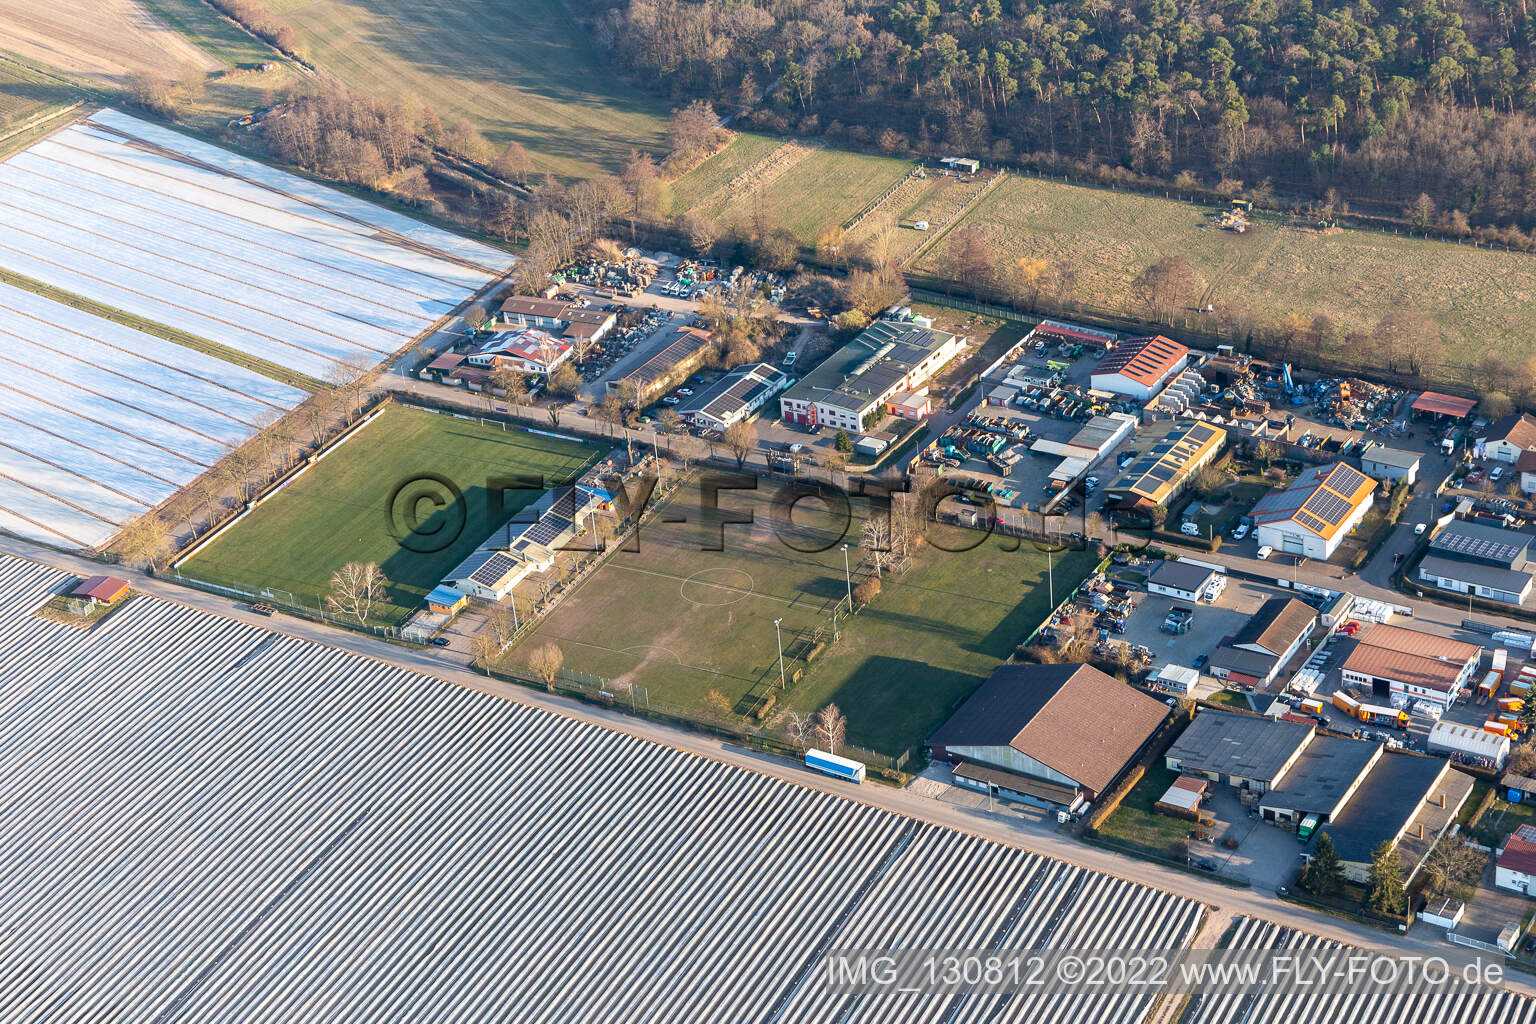 Vue aérienne de Club de football Lustadt eV à Lustadt dans le département Rhénanie-Palatinat, Allemagne